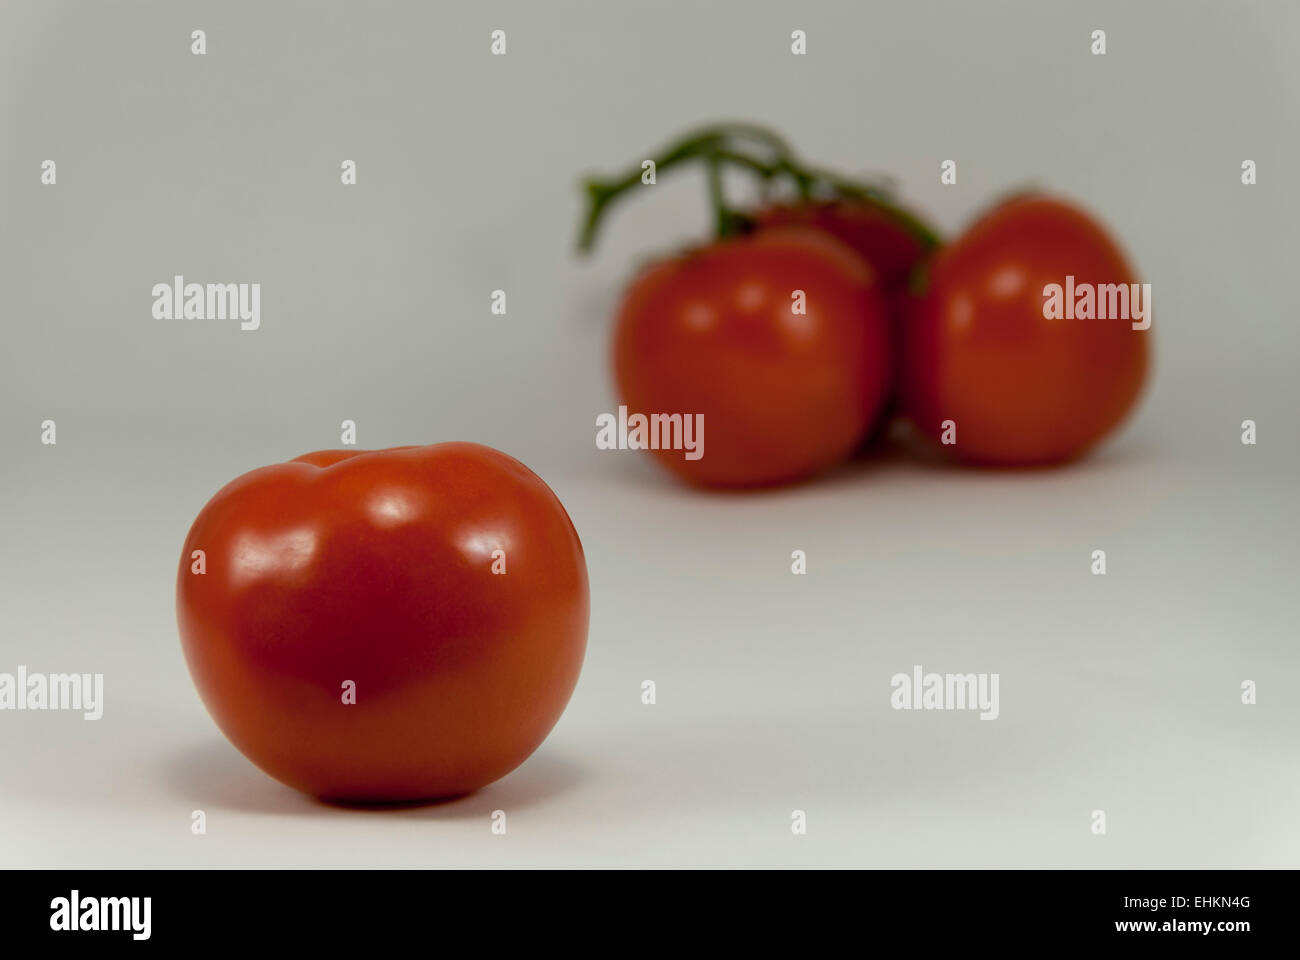 Einzelne Reife pralle rote Tomate unterstützt durch verschwommene Gruppierung von drei Tomaten mit weißem Hintergrund. Stockfoto